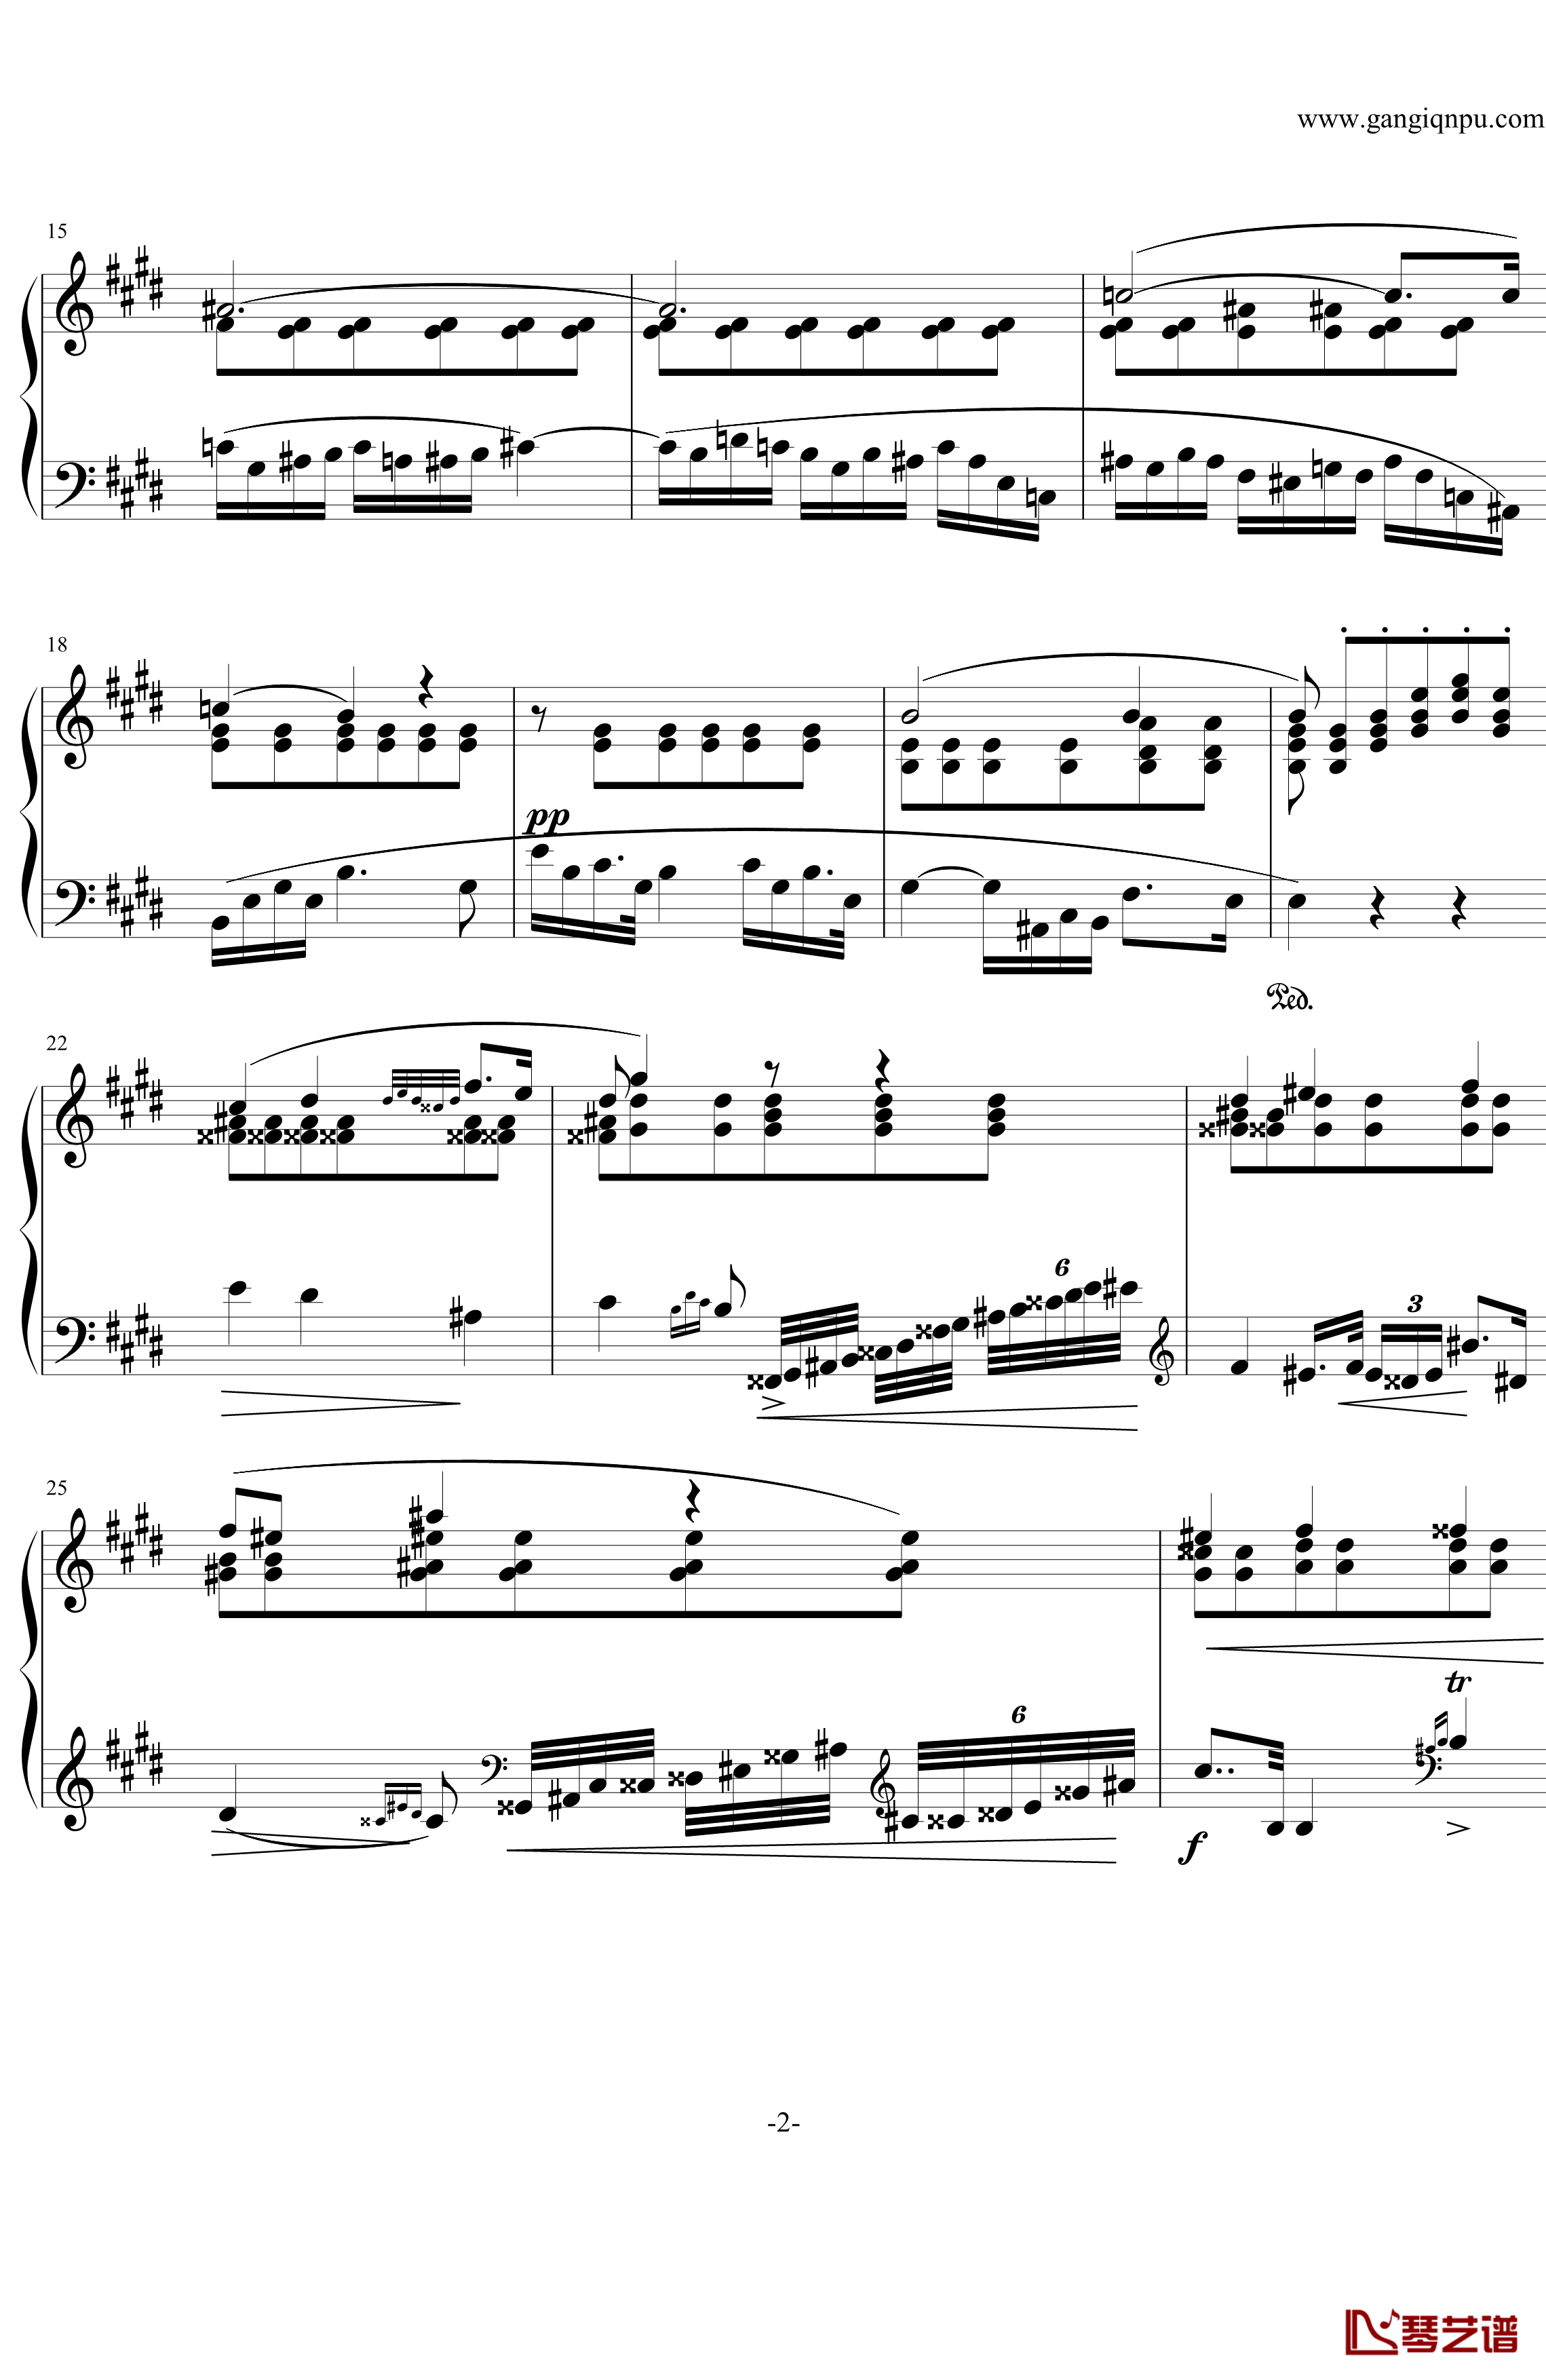 肖邦练习曲第19首钢琴谱-大提琴练习曲-肖邦-chopin2